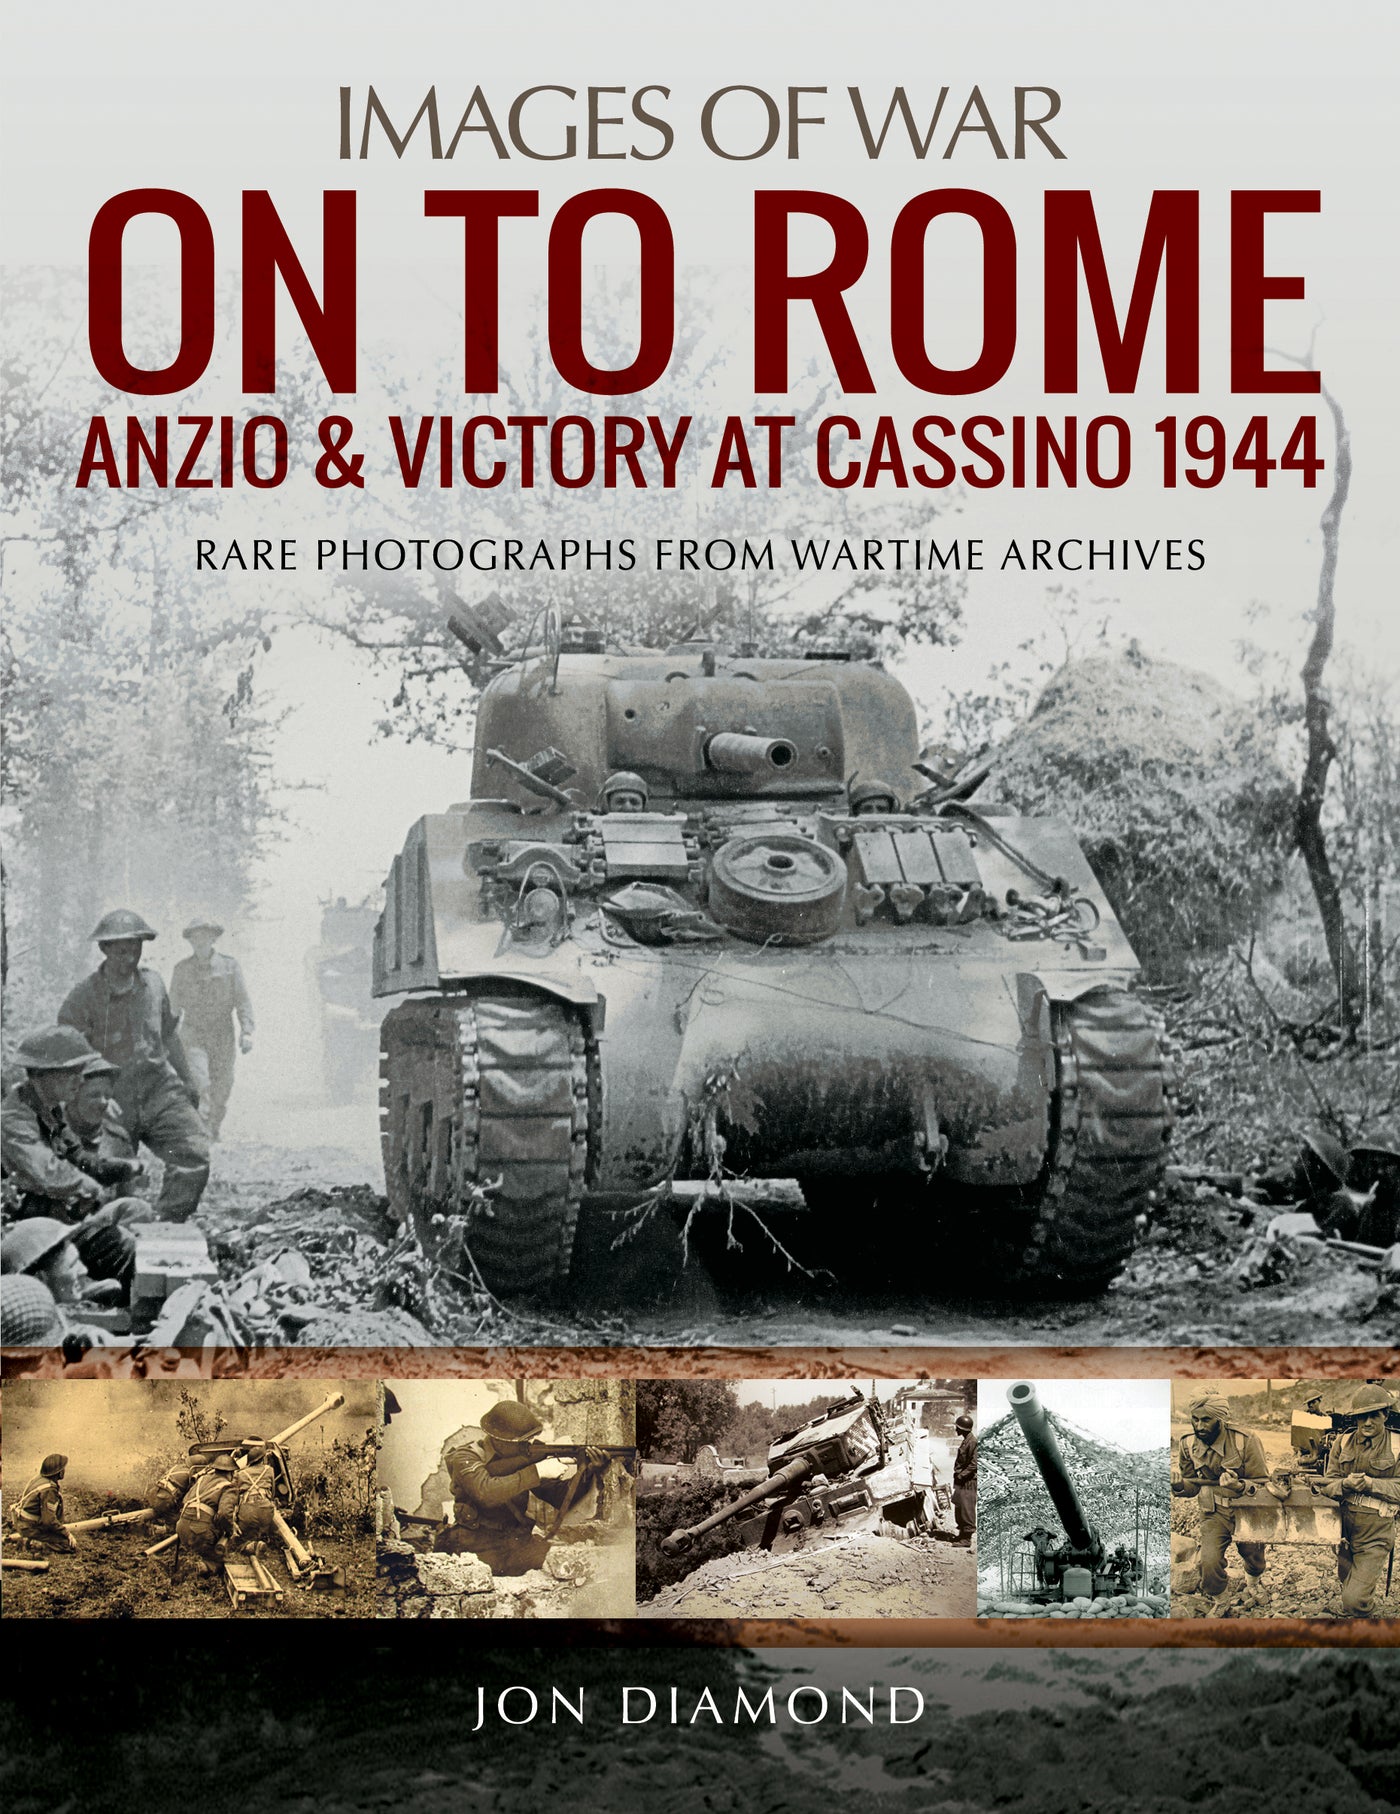 Weiter nach Rom: Anzio und der Sieg bei Cassino, 1944 